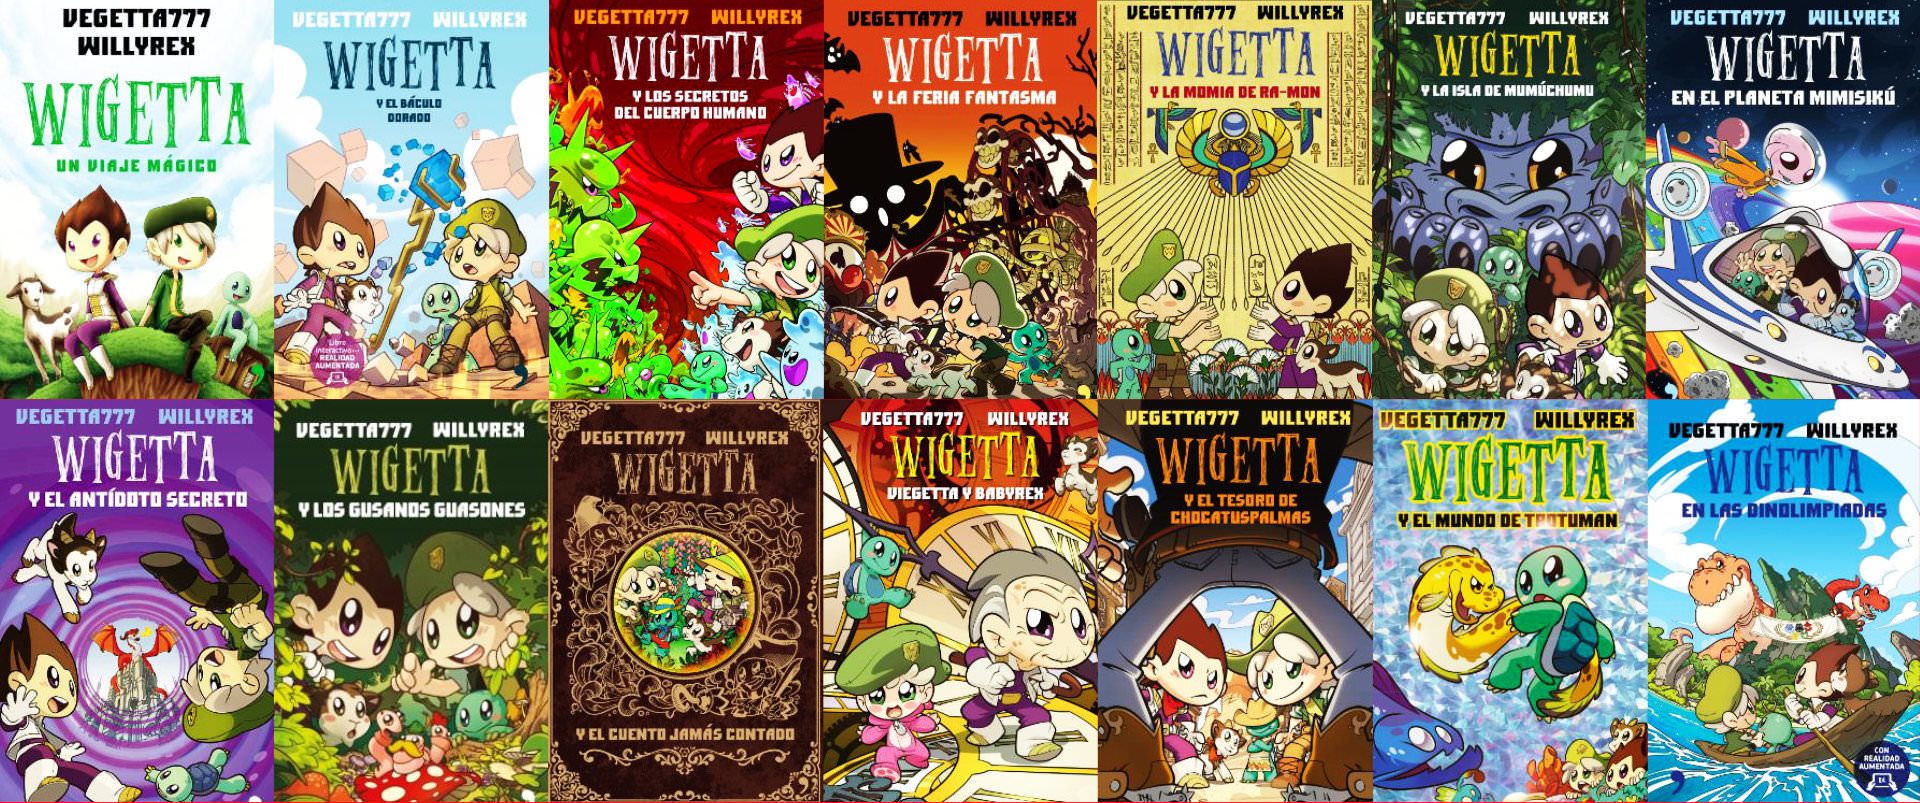 Todos los libros de Wigetta en orden y donde comprarlos Actualizado 2020